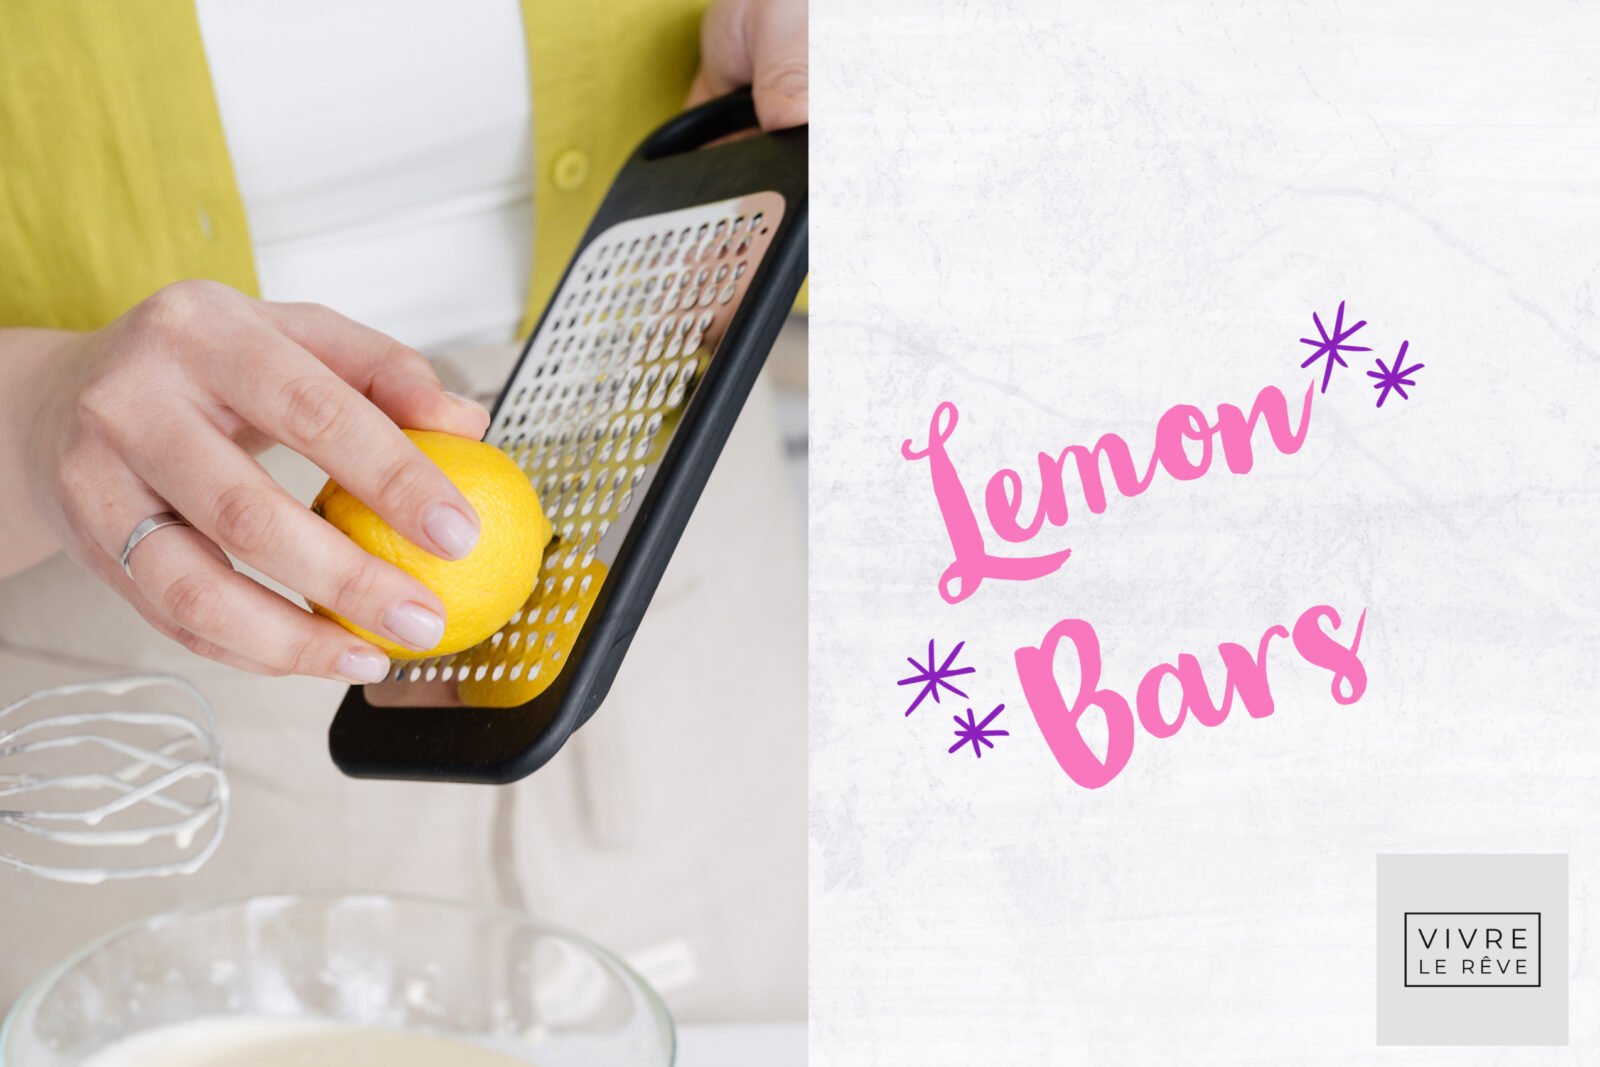 The Perfect February Dessert - Lemon Bars!